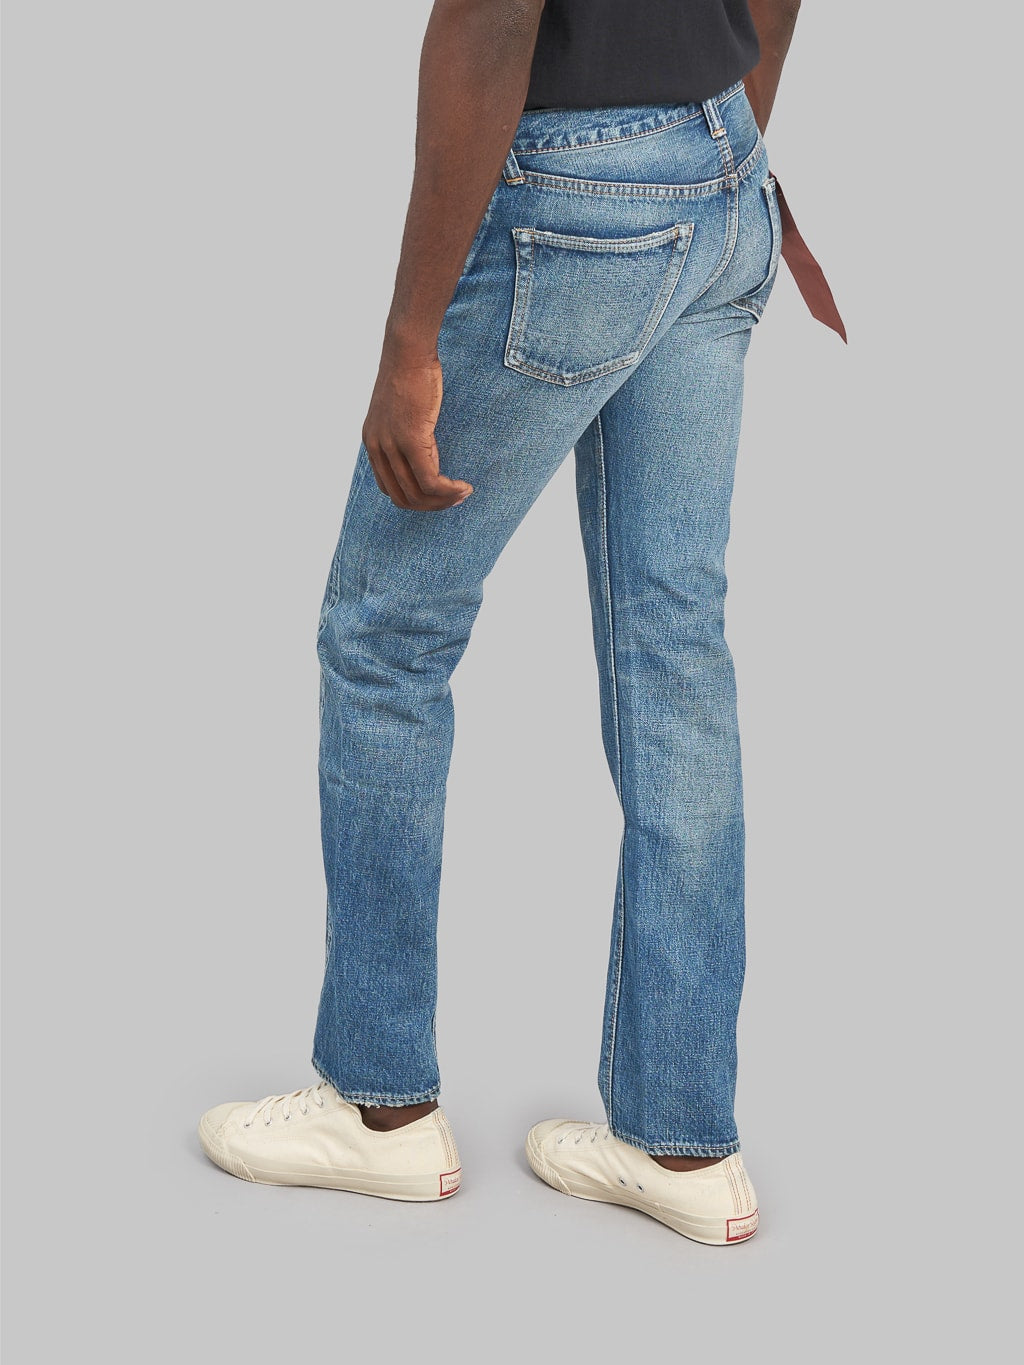 Fullcount 1108 Dartford Slim Straight Jeans leg aesthetic 